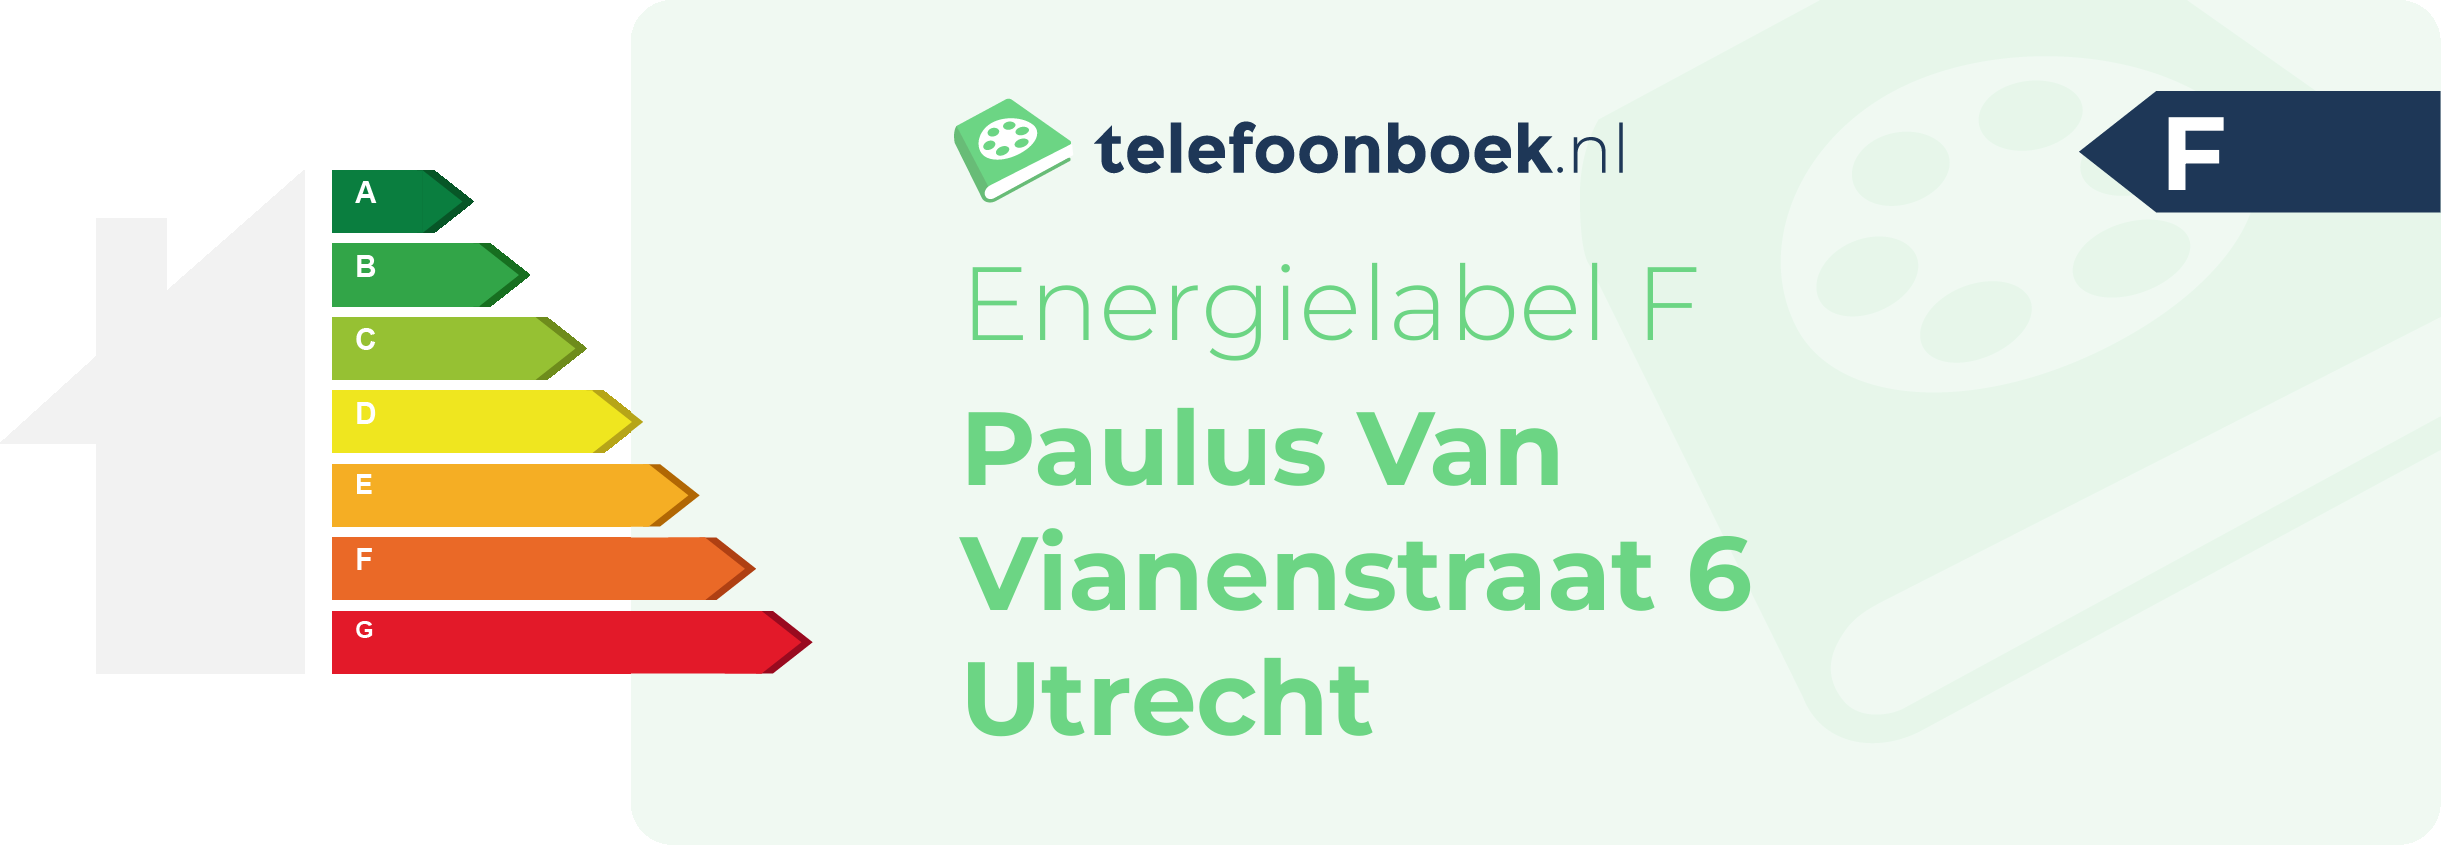 Energielabel Paulus Van Vianenstraat 6 Utrecht